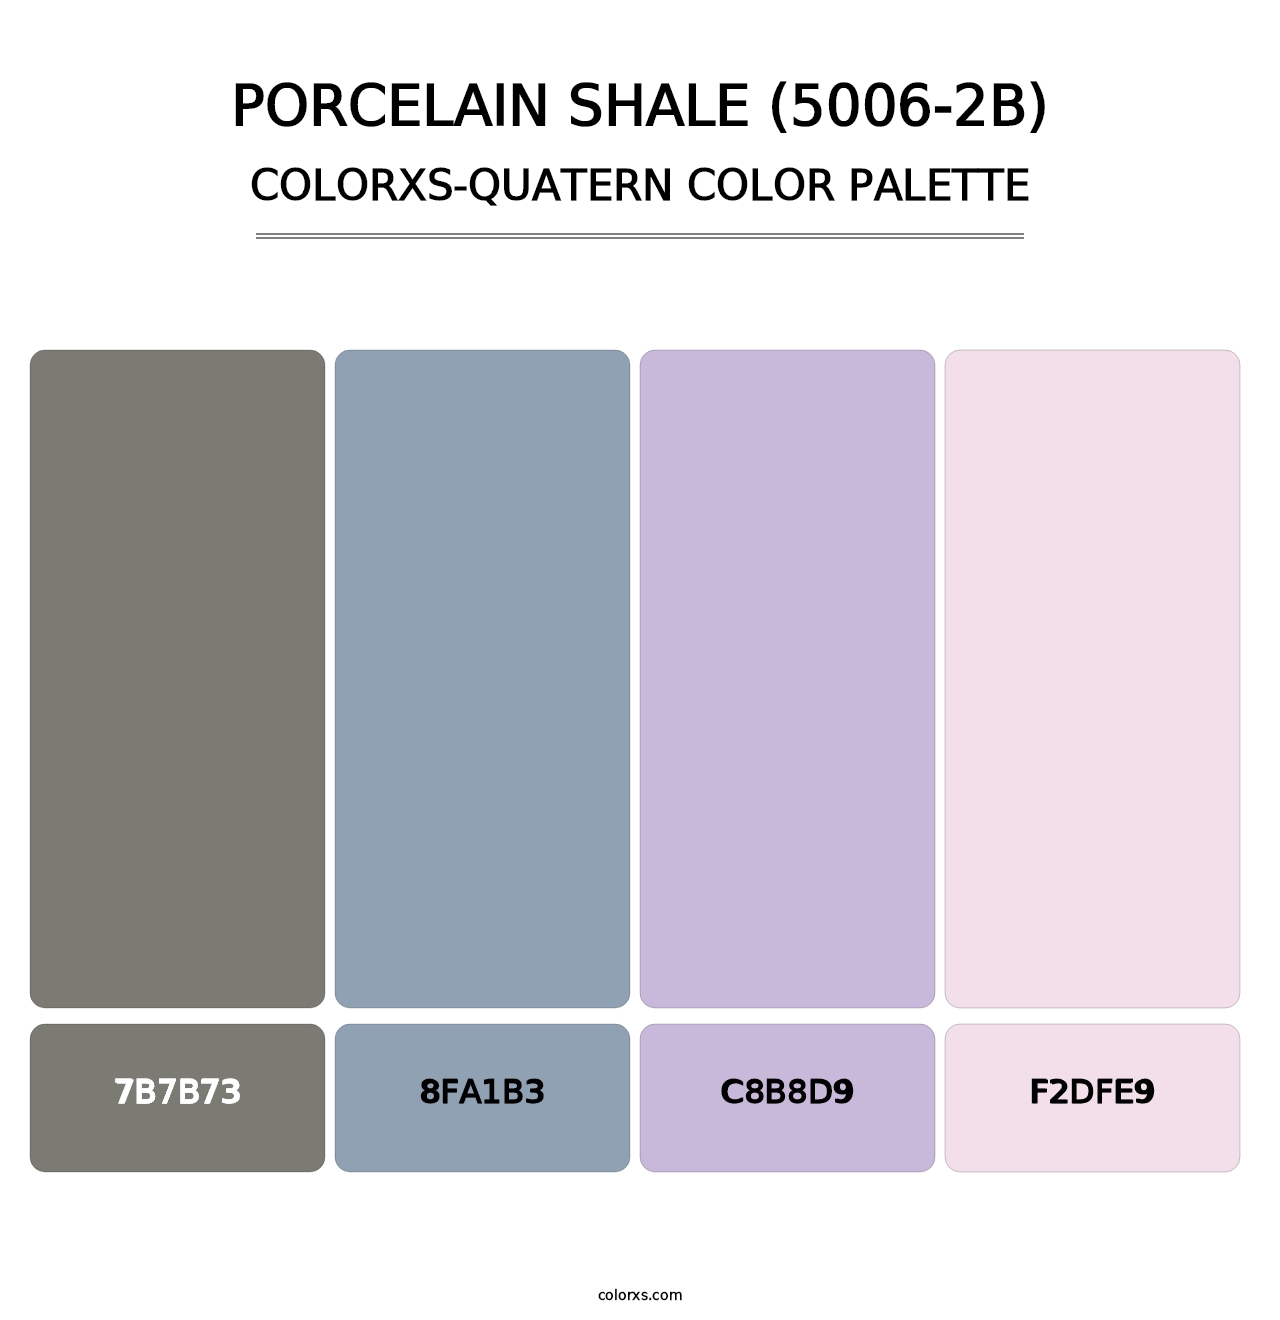 Porcelain Shale (5006-2B) - Colorxs Quatern Palette